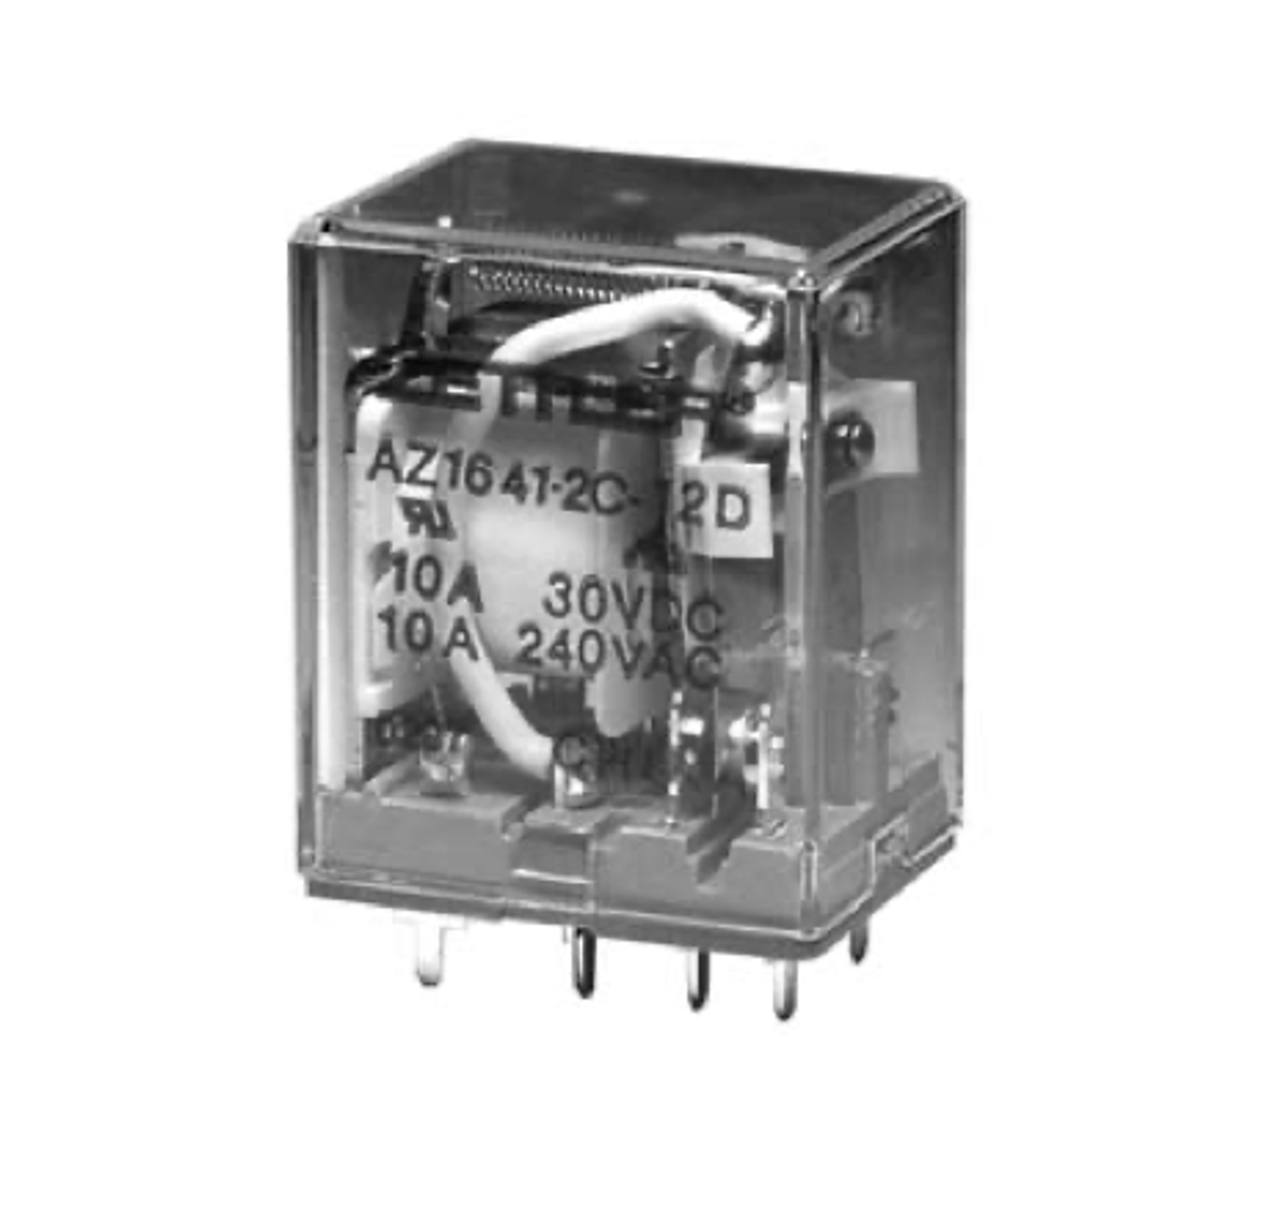 American Zettler AZ1641-2CT-6A Power Relay